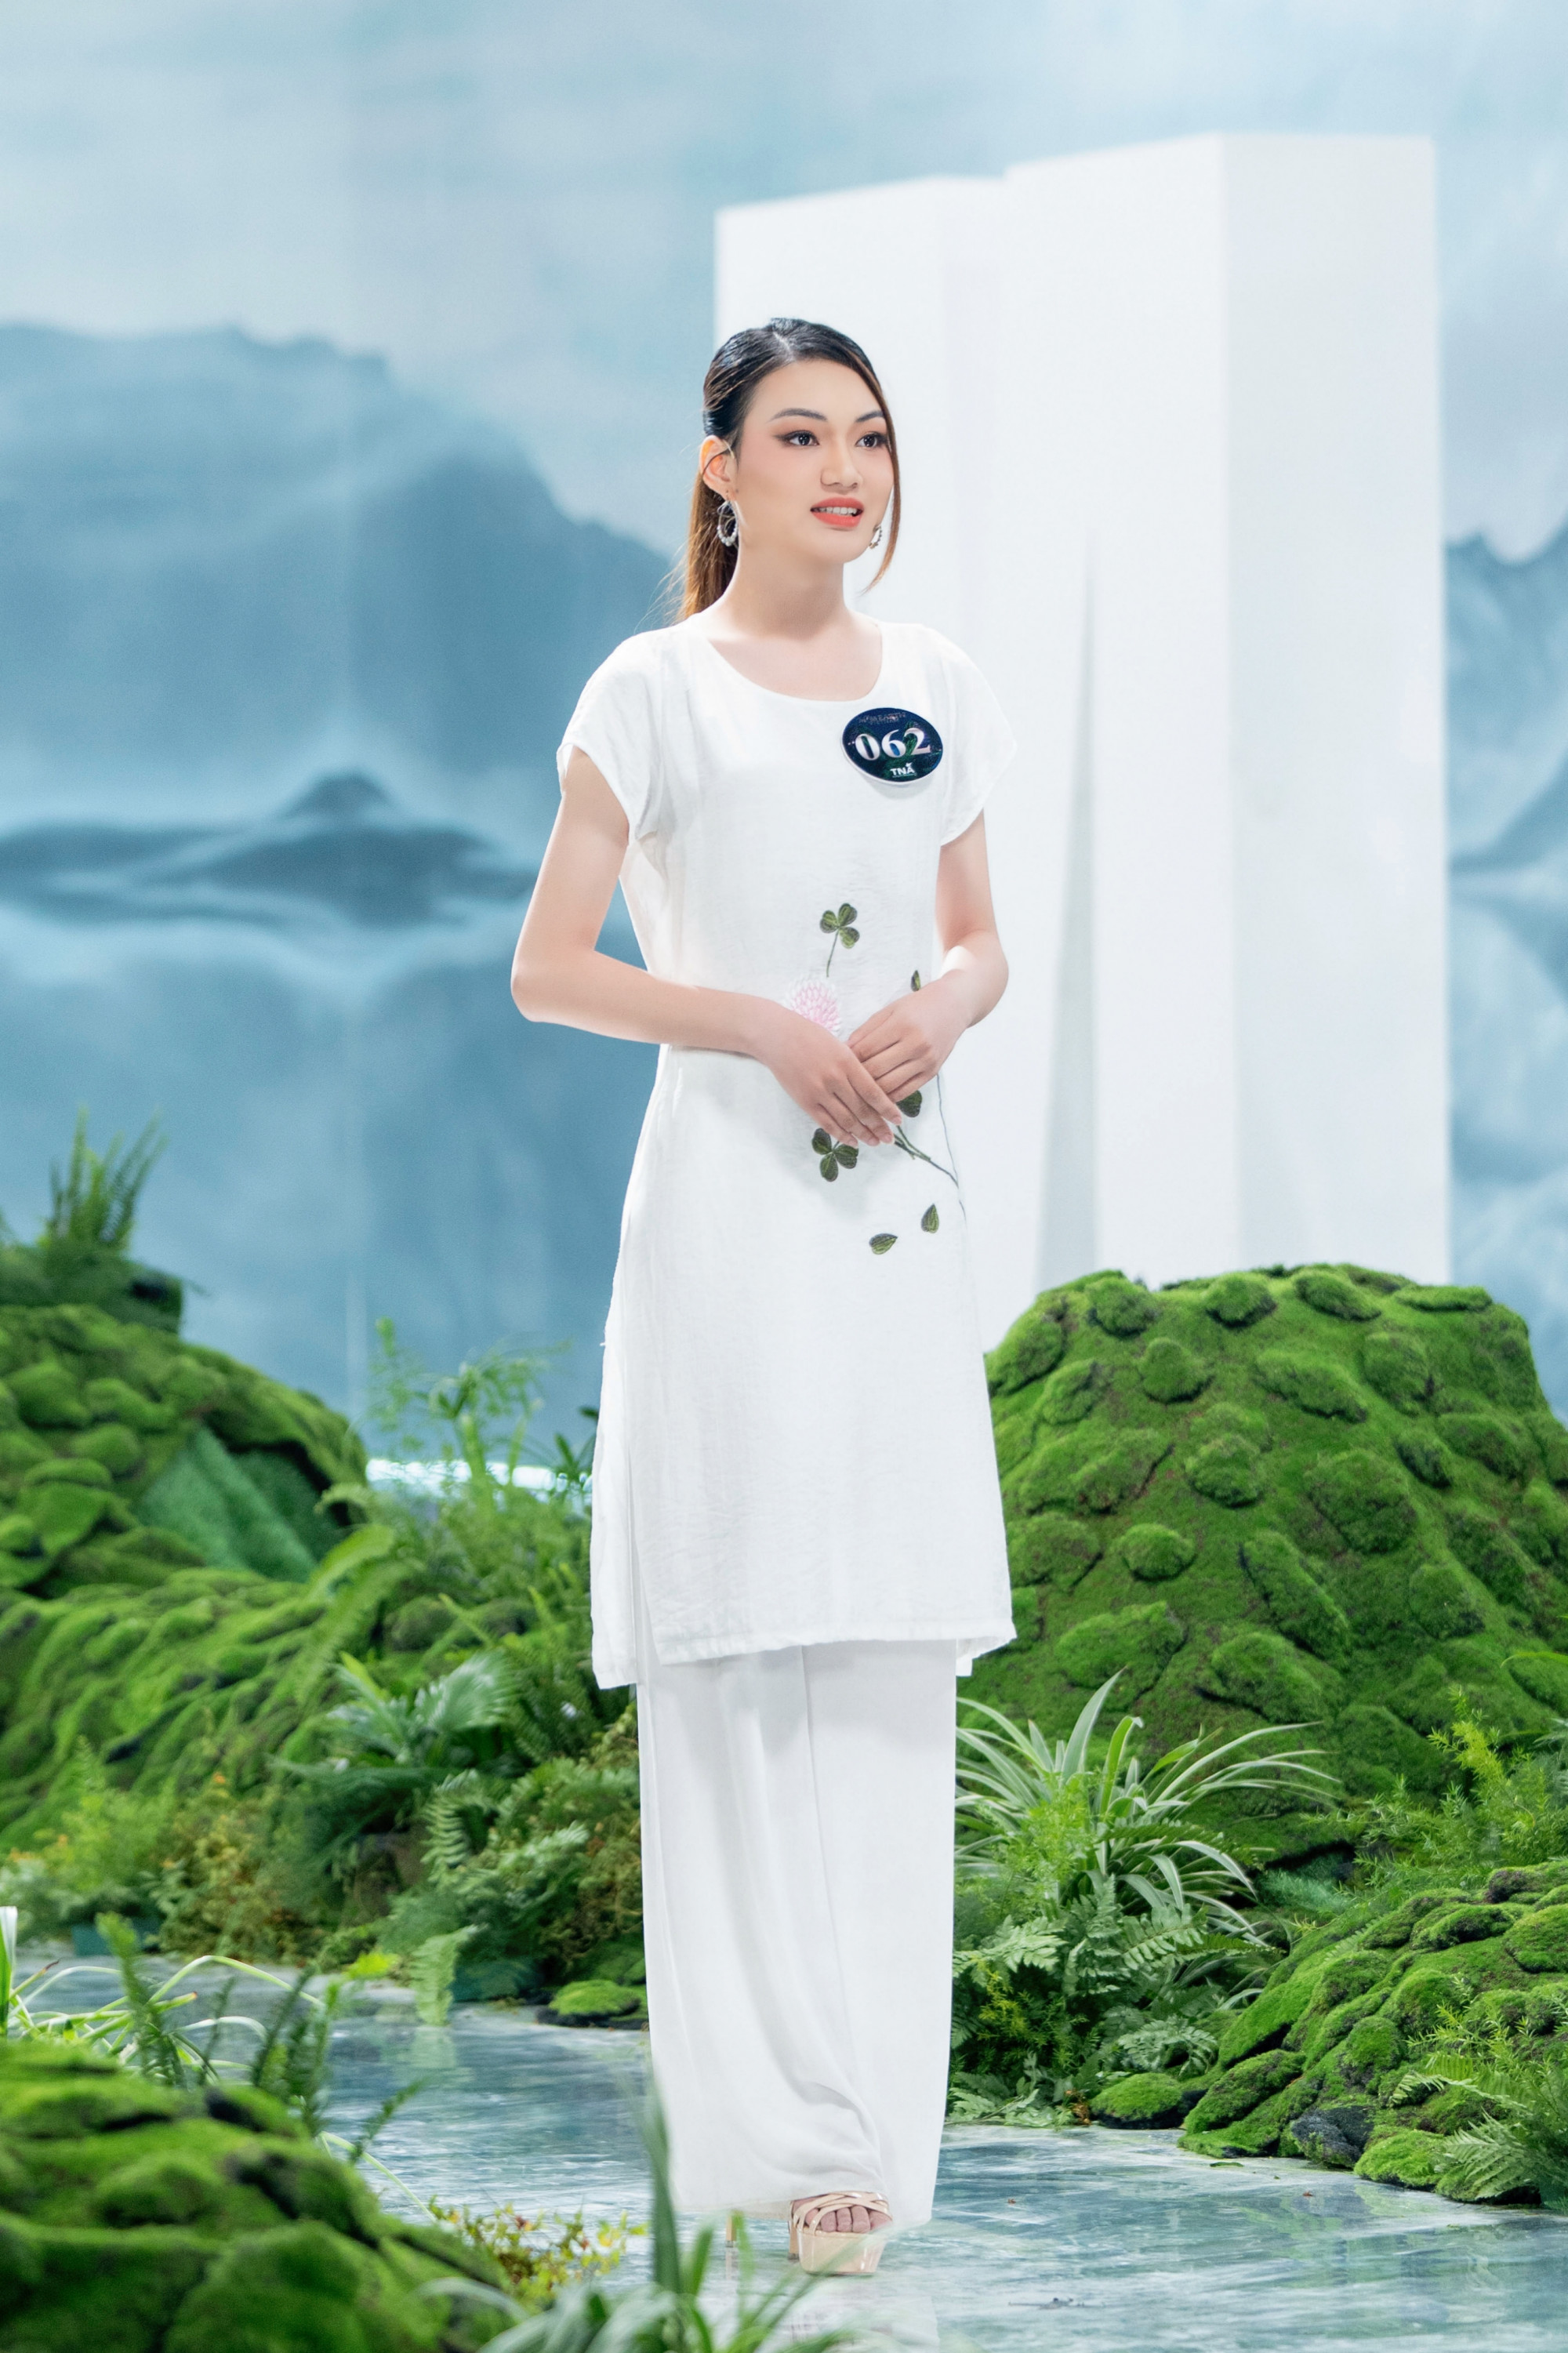 Với tên gọi là Món quà của mẹ, mẫu thiết kế của thí sinh Nguyễn Thị Thu Trang được chính mẹ ruột thiết kế tặng để đi thi Miss Earth Việt Nam 2023. Bộ trang phục được làm từ các trang phục cũ, nhưng với Thu Trang là cả một niềm tự hào.